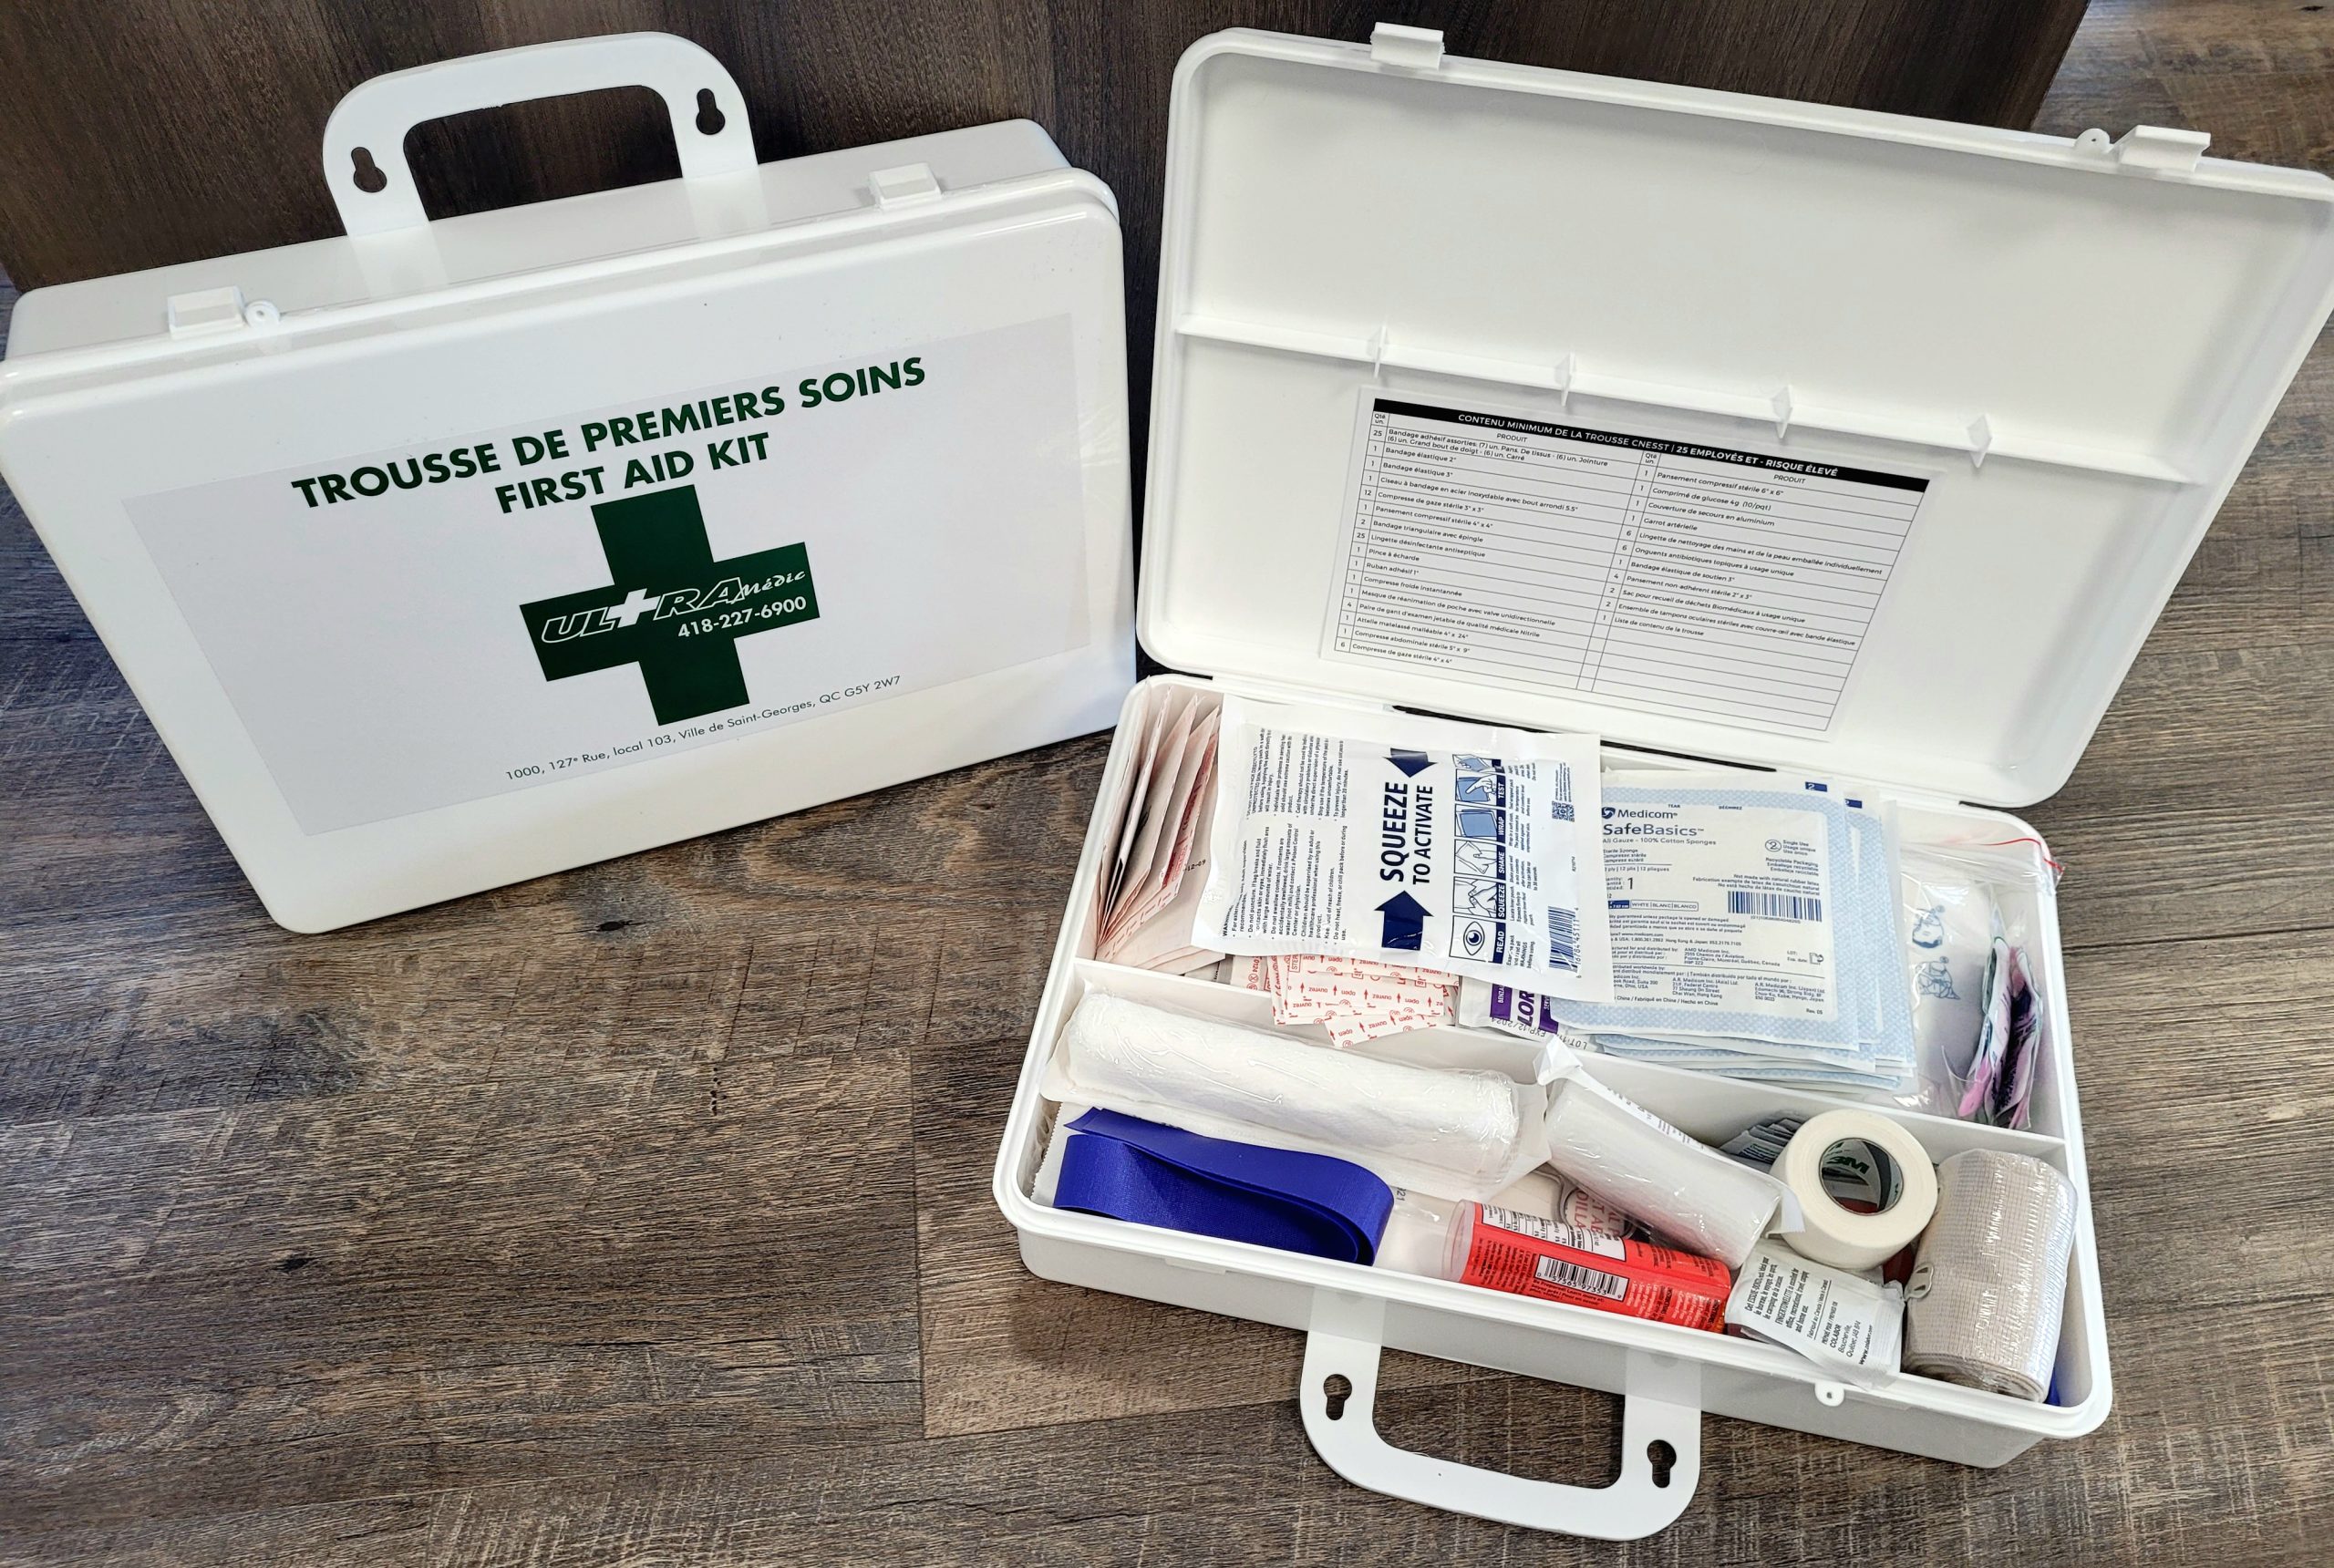 Trousse de premiers soins pour traumatisme - Ambulanciers - Standard